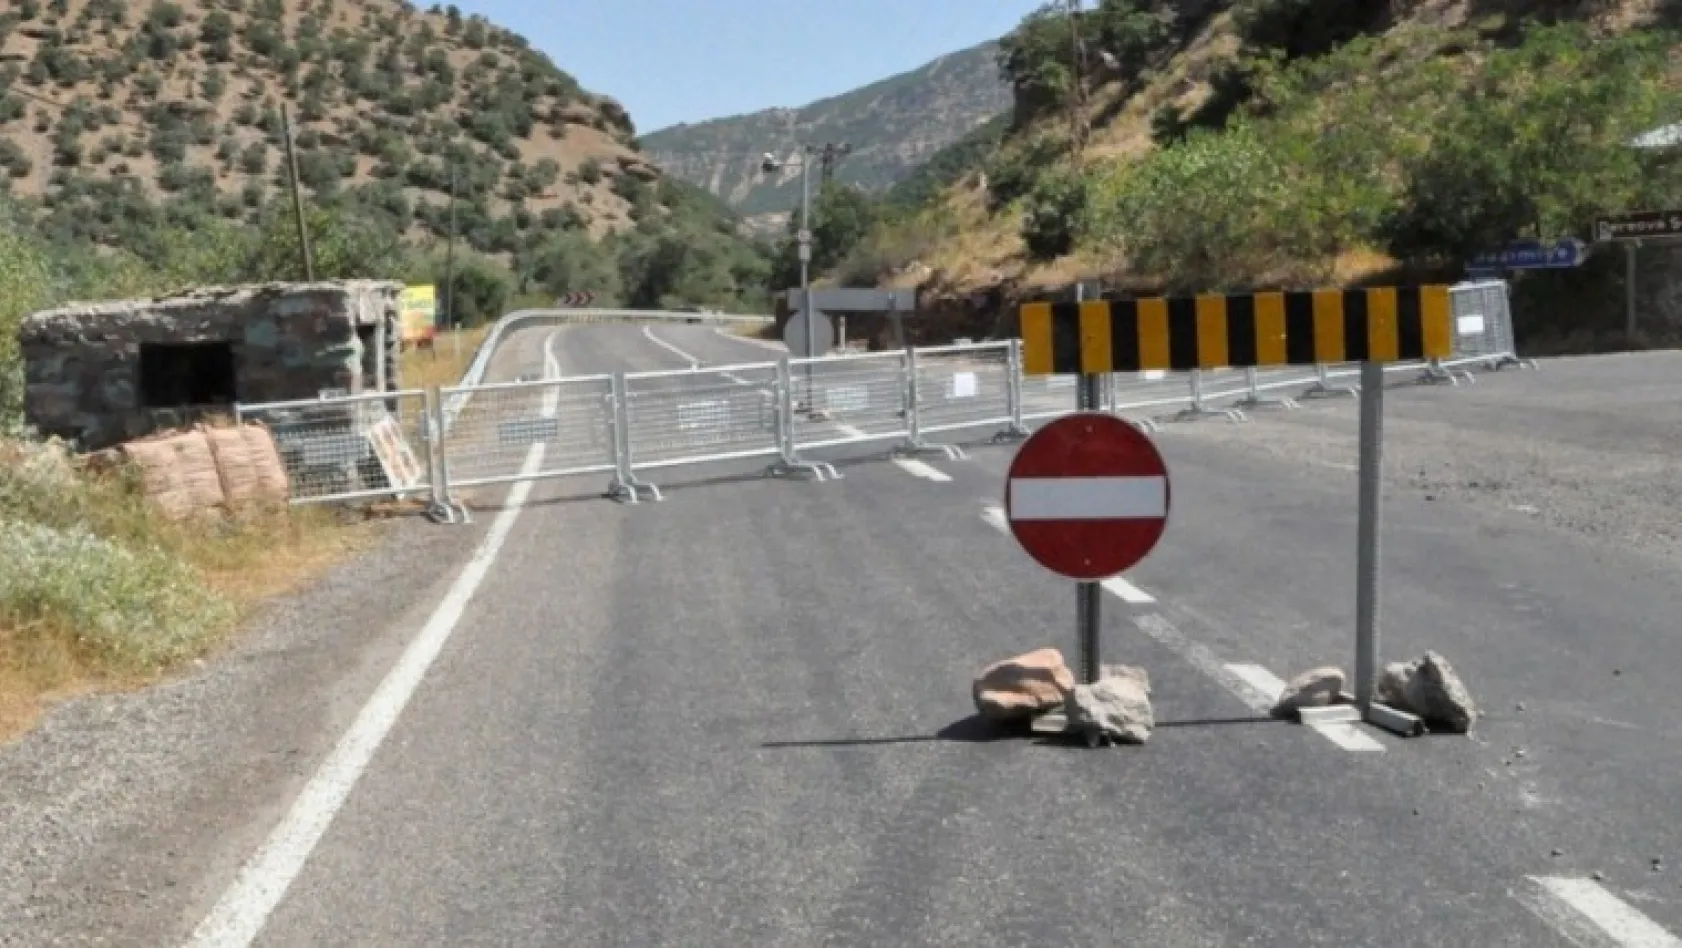 Tunceli'de bazı yollar ulaşıma kapatıldı